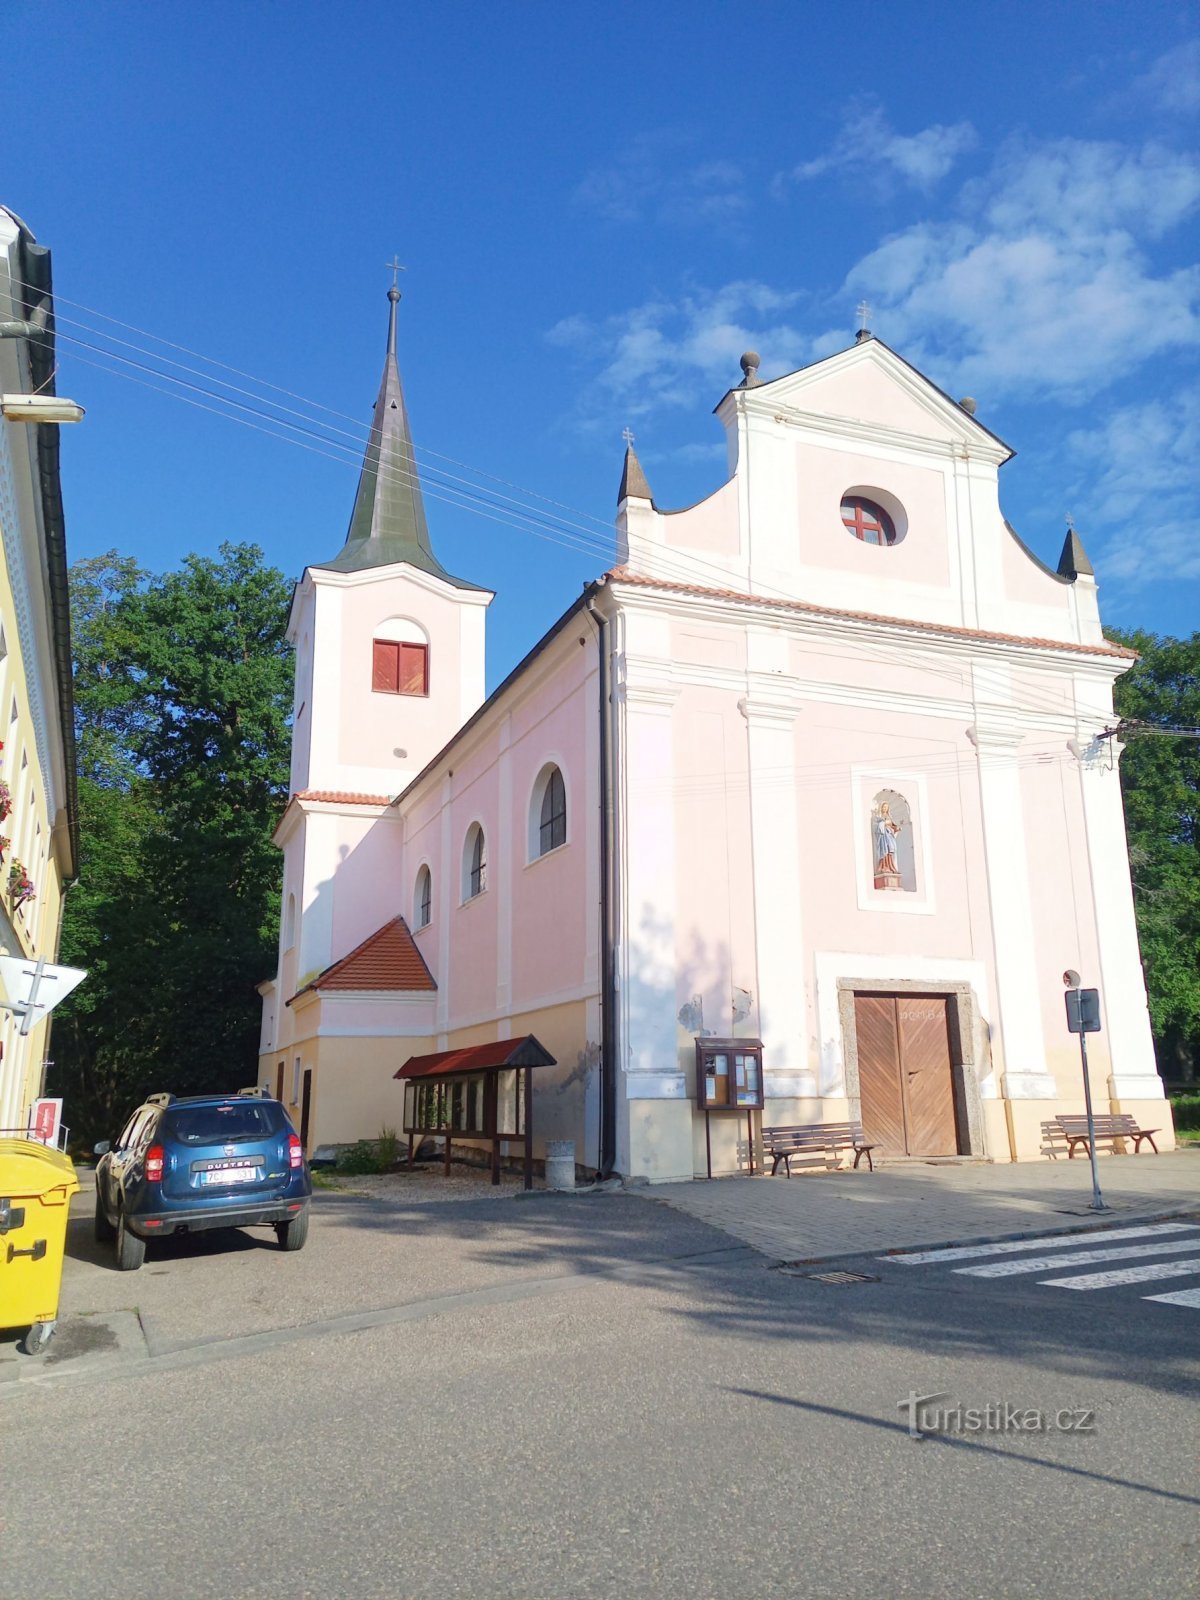 1. Iglesia barroca de la Santísima Trinidad en Nadějkov de 1628